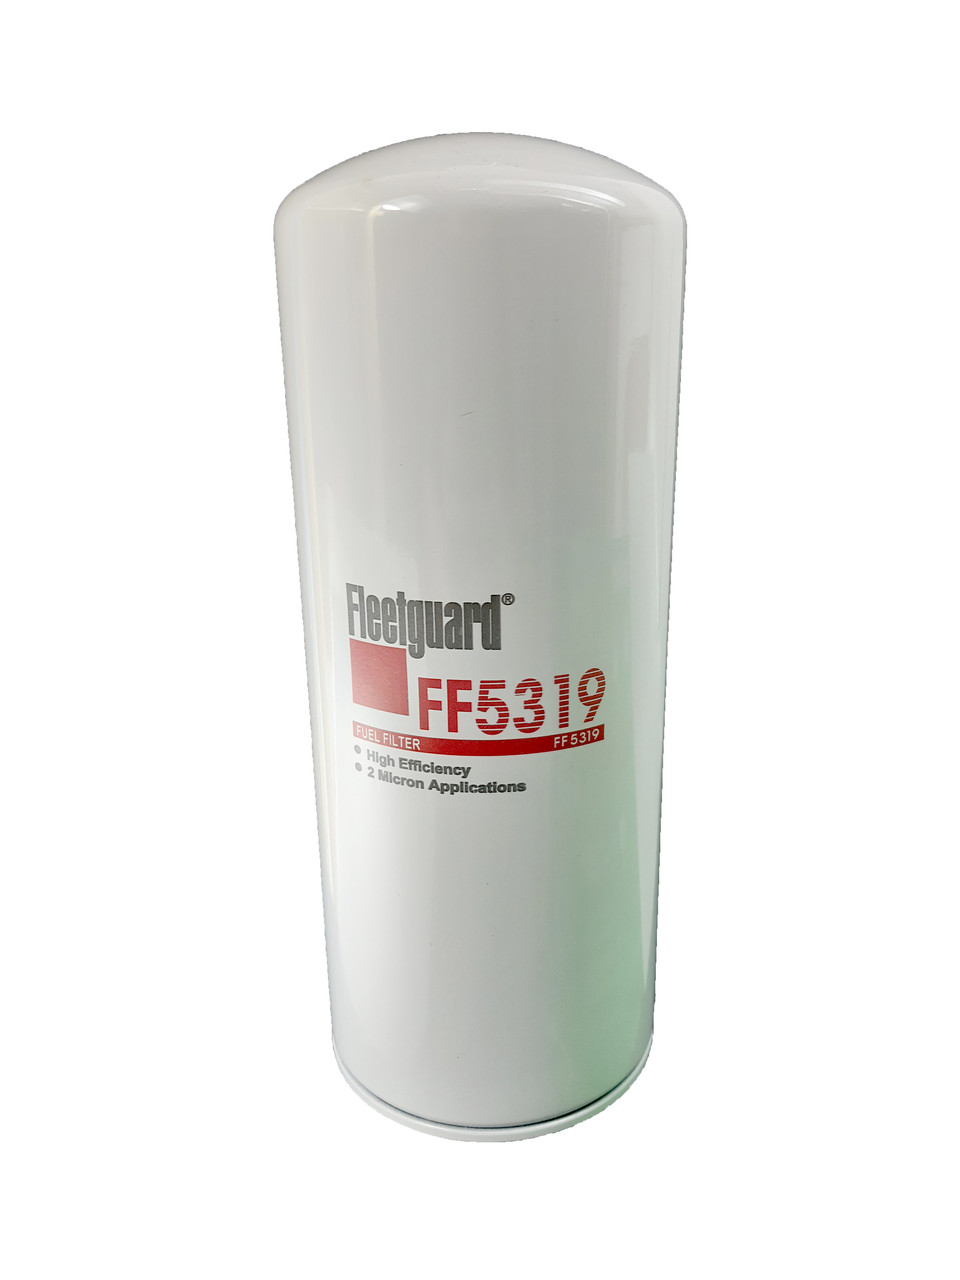 Топливный фильтр тонкой очистки FF5319 CATERPILLAR 1R - 0749